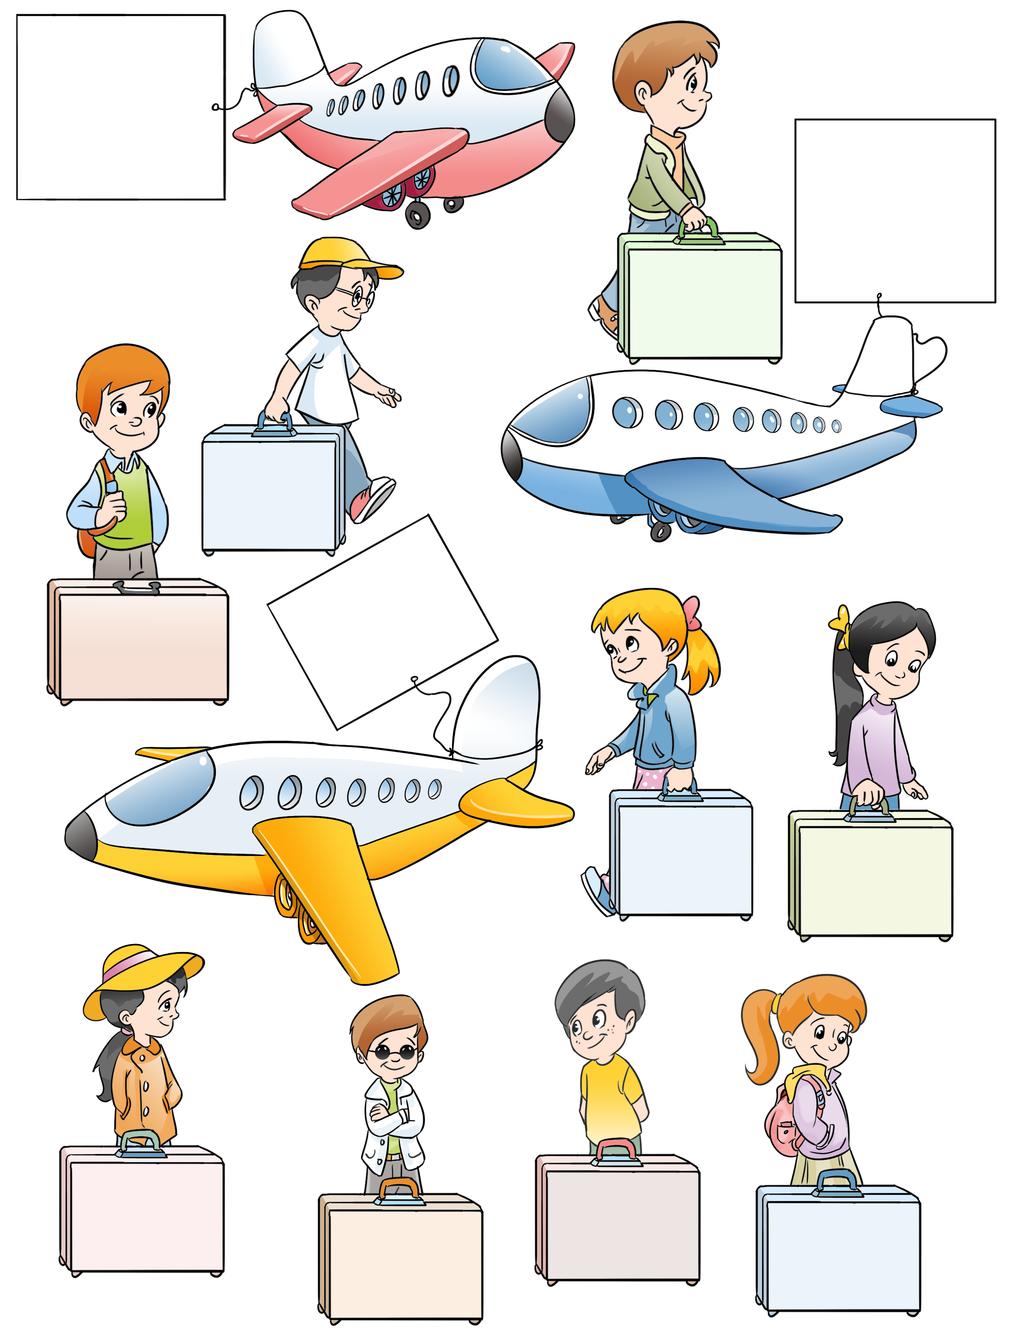 Çıkarma İşlemi Çıkarma işlemlerinin sonuçlarına göre kimin hangi uçağa bineceğini bulalım. Yolcuların isimlerini yolcu listelerine yazalım.